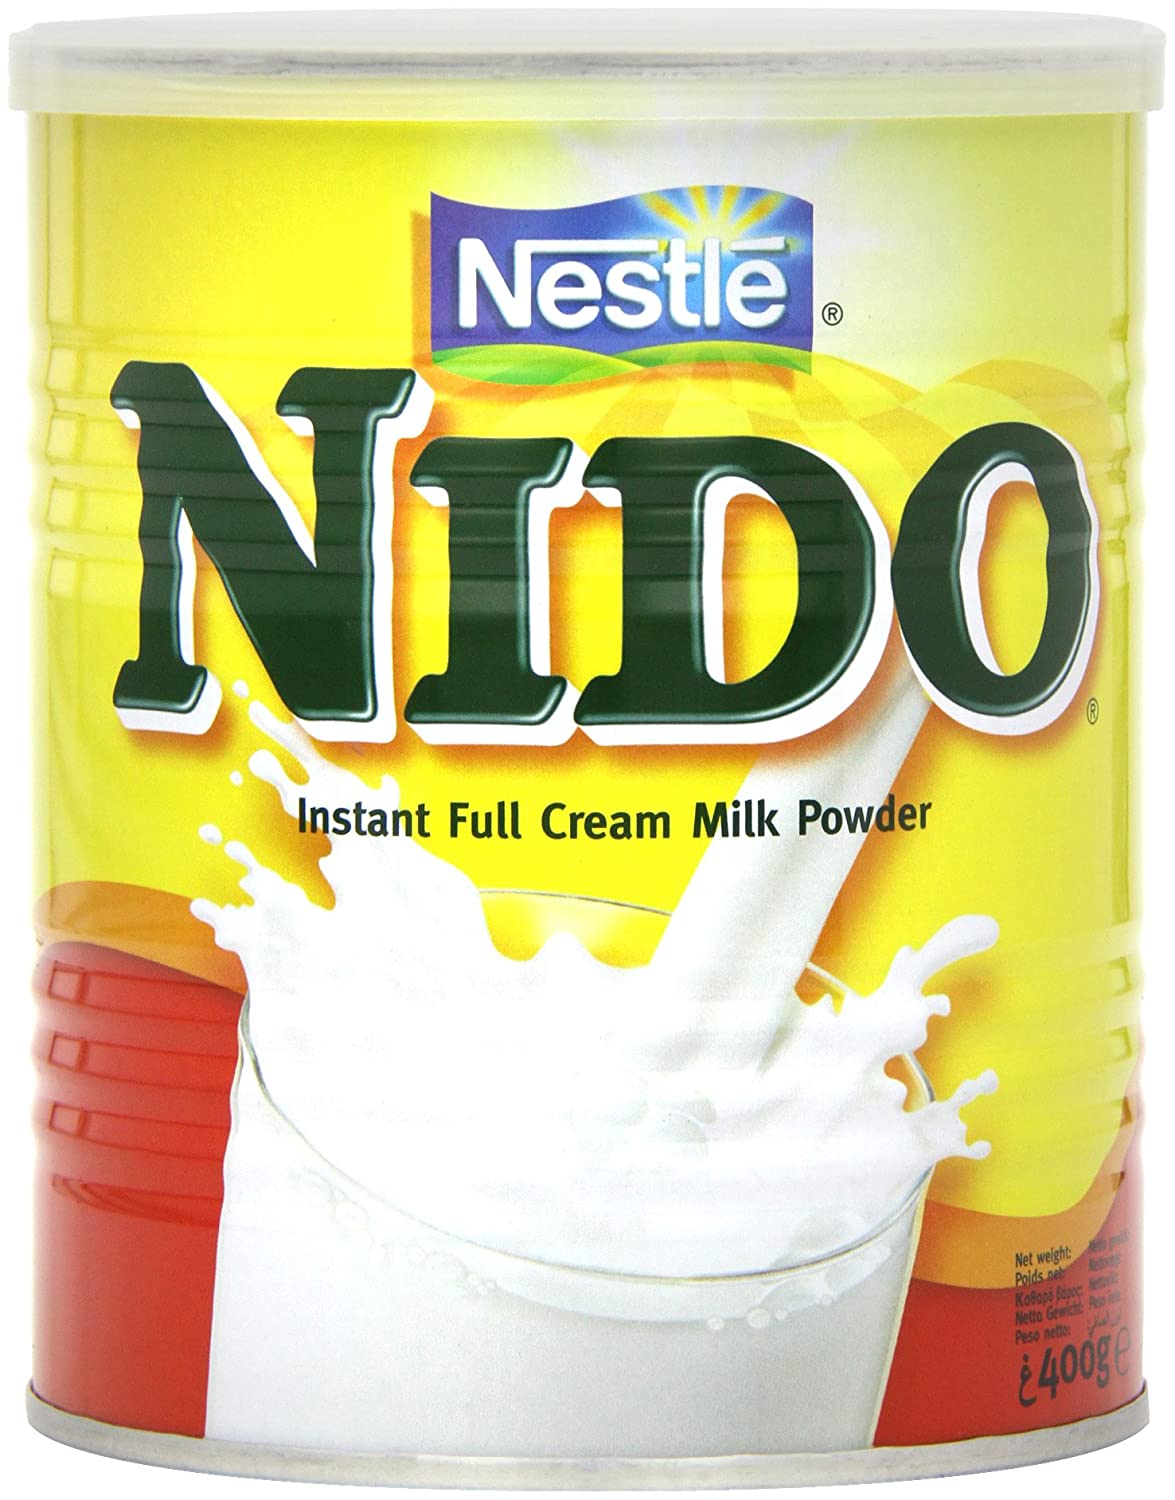 Nestlé Nido Milk Powder, 400 g (Pack of 6)